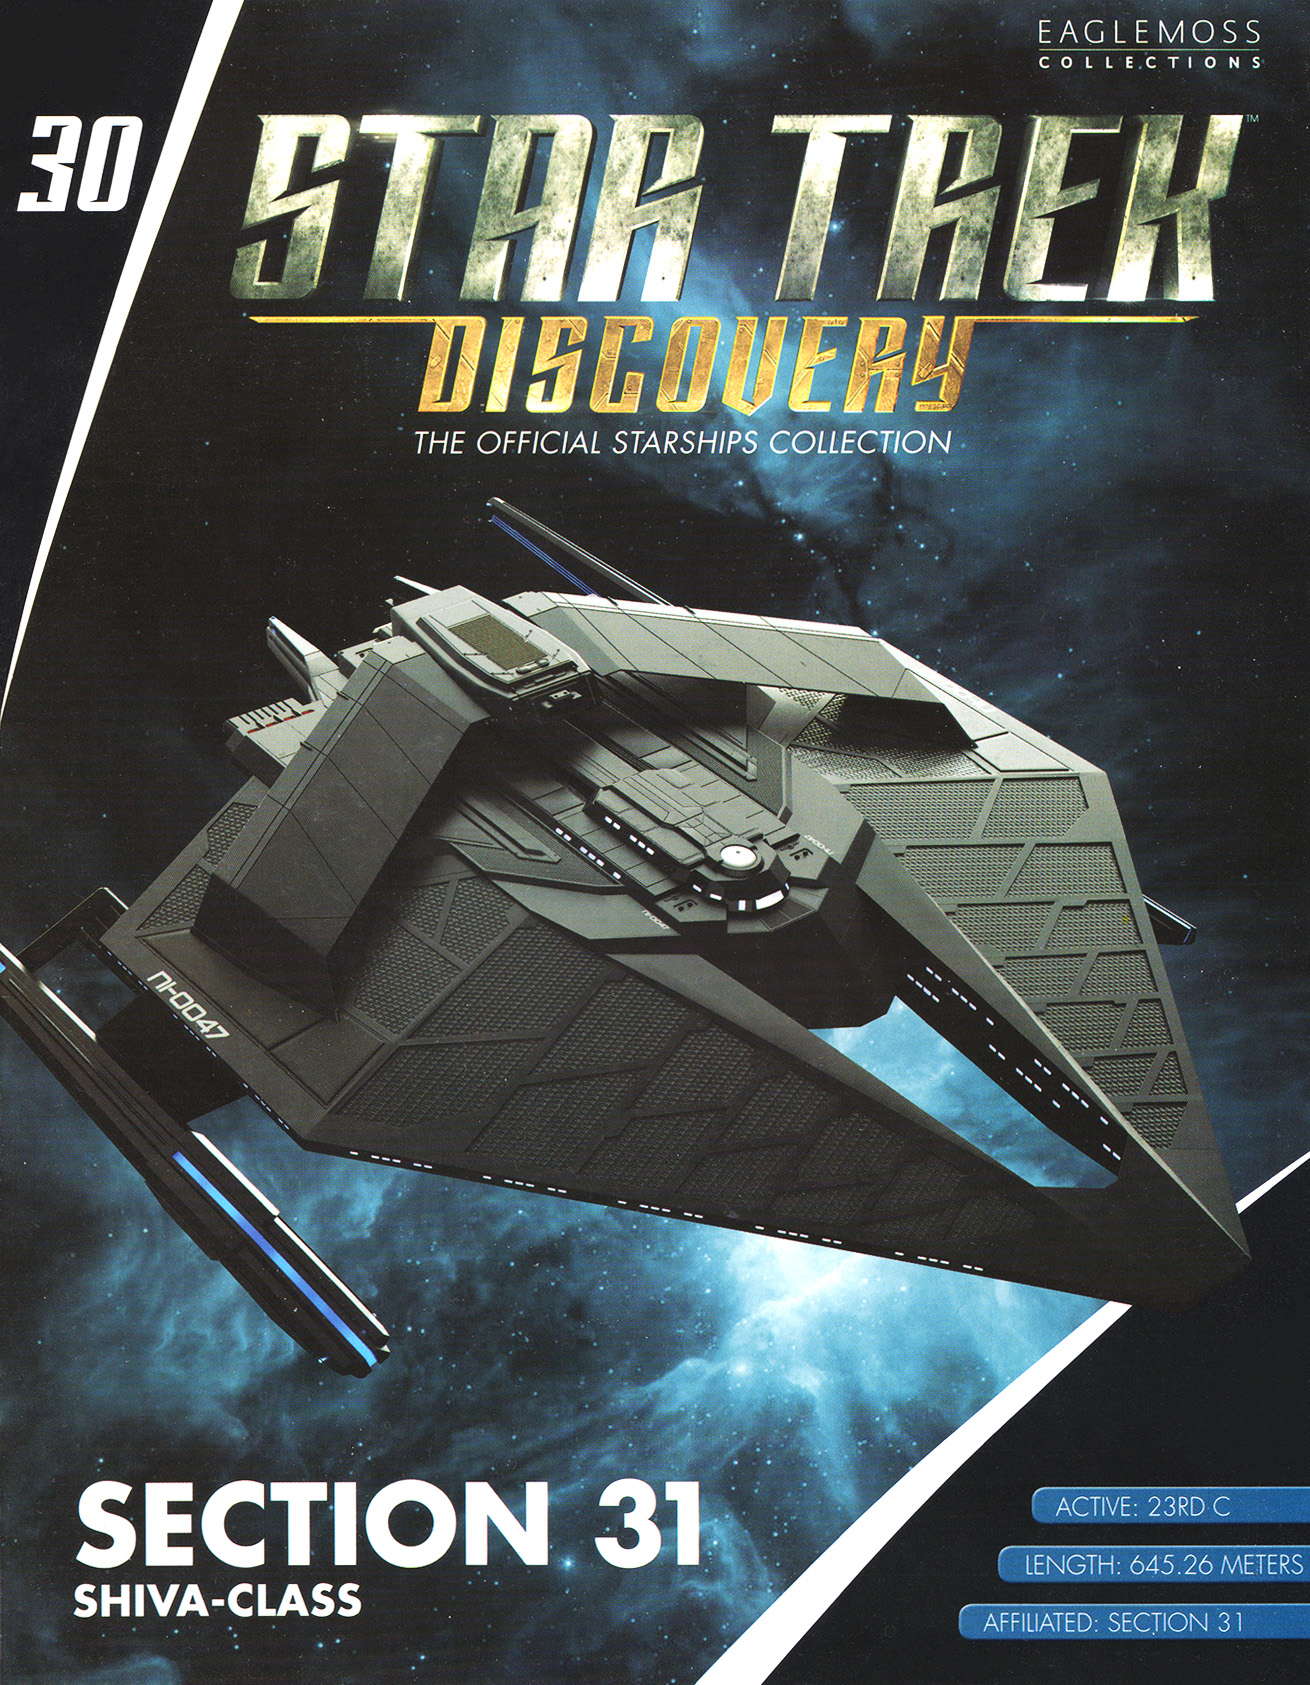 Eaglemoss Star Trek Starships Discovery Issue 30